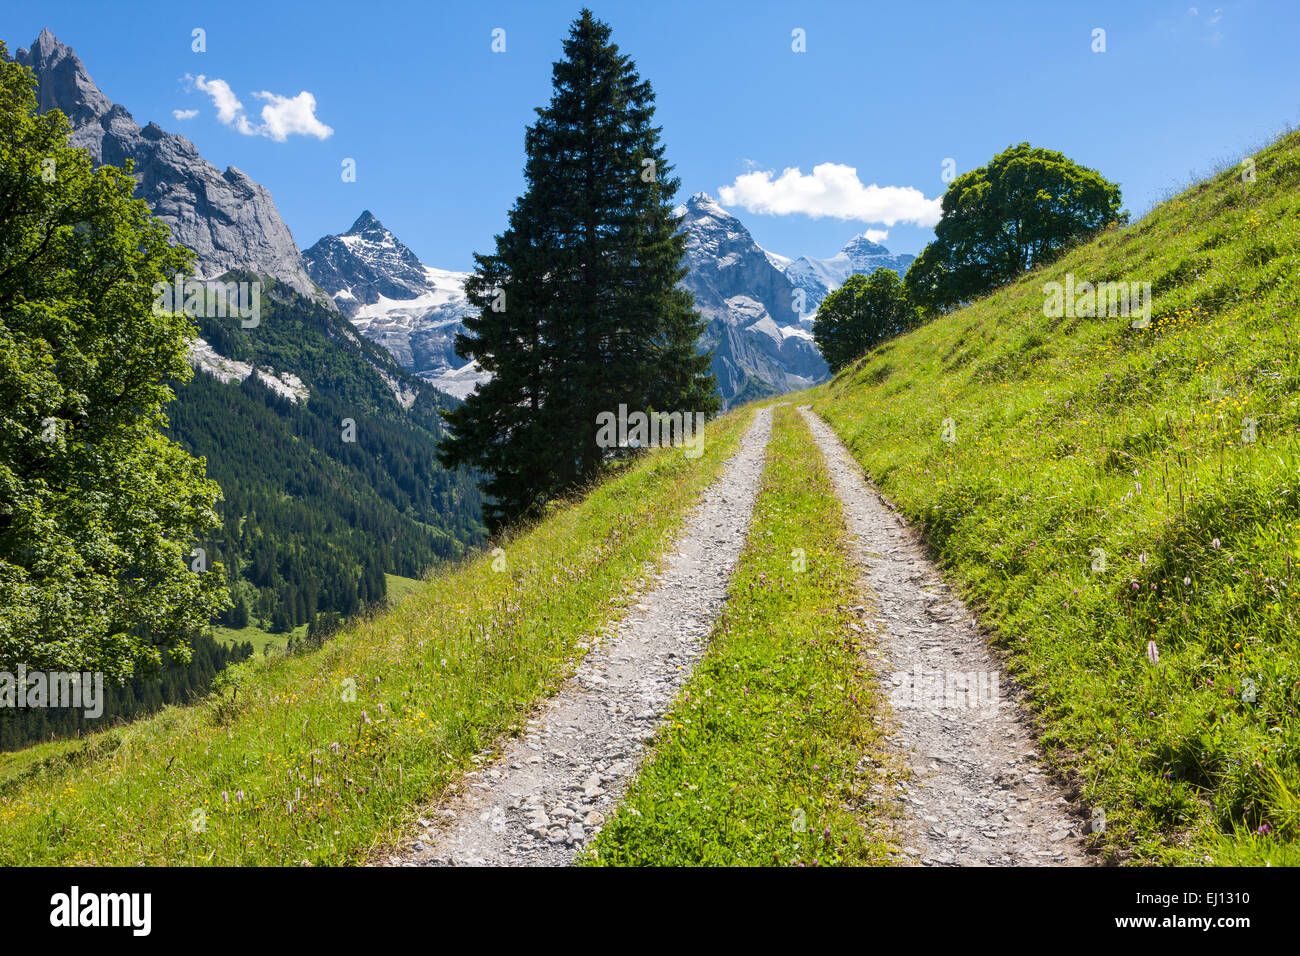 Valle di Rosenlaui, Svizzera, Europa, canton Berna Oberland Bernese, sicomori, abete rosso, titolo Foto Stock